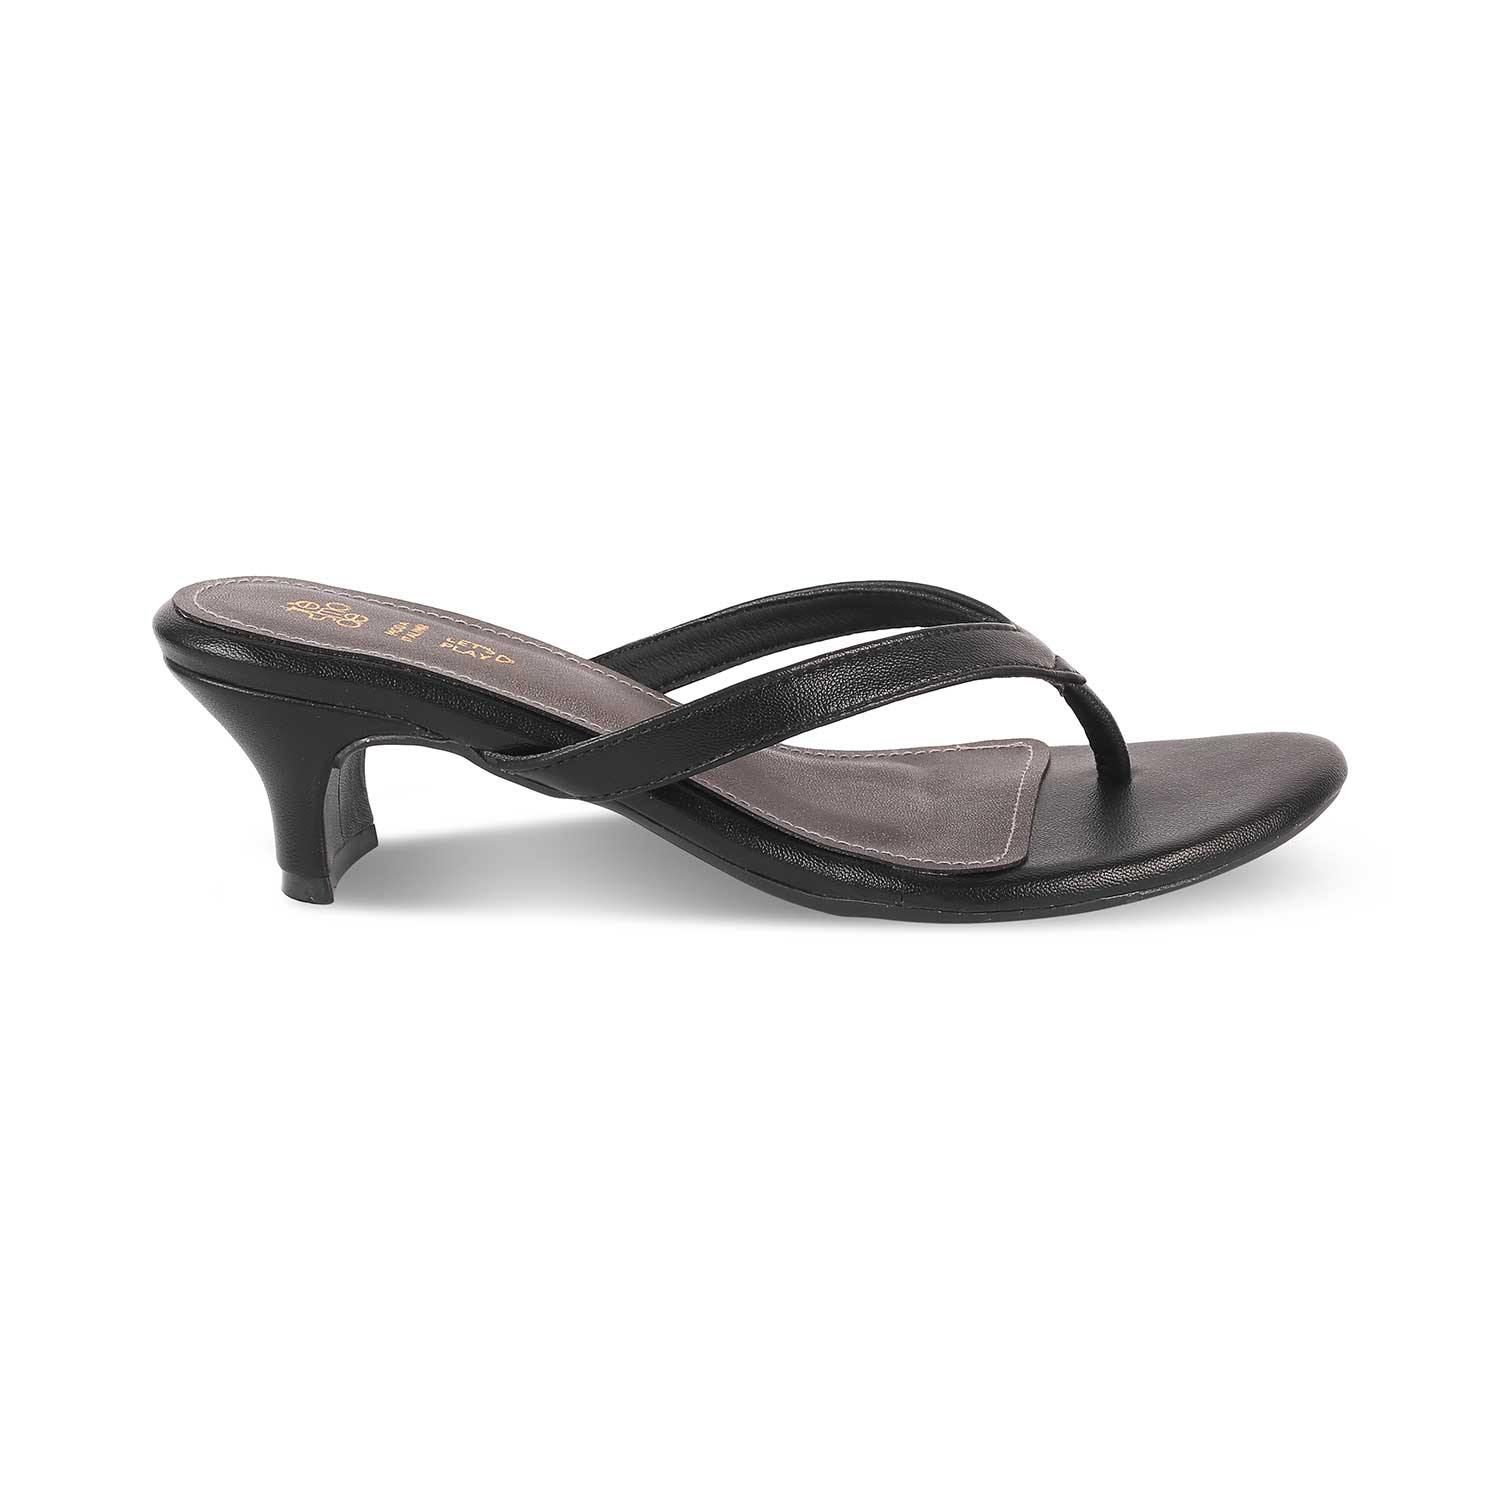 The Puglia Black Women's Dress Heel Sandals Tresmode - Tresmode